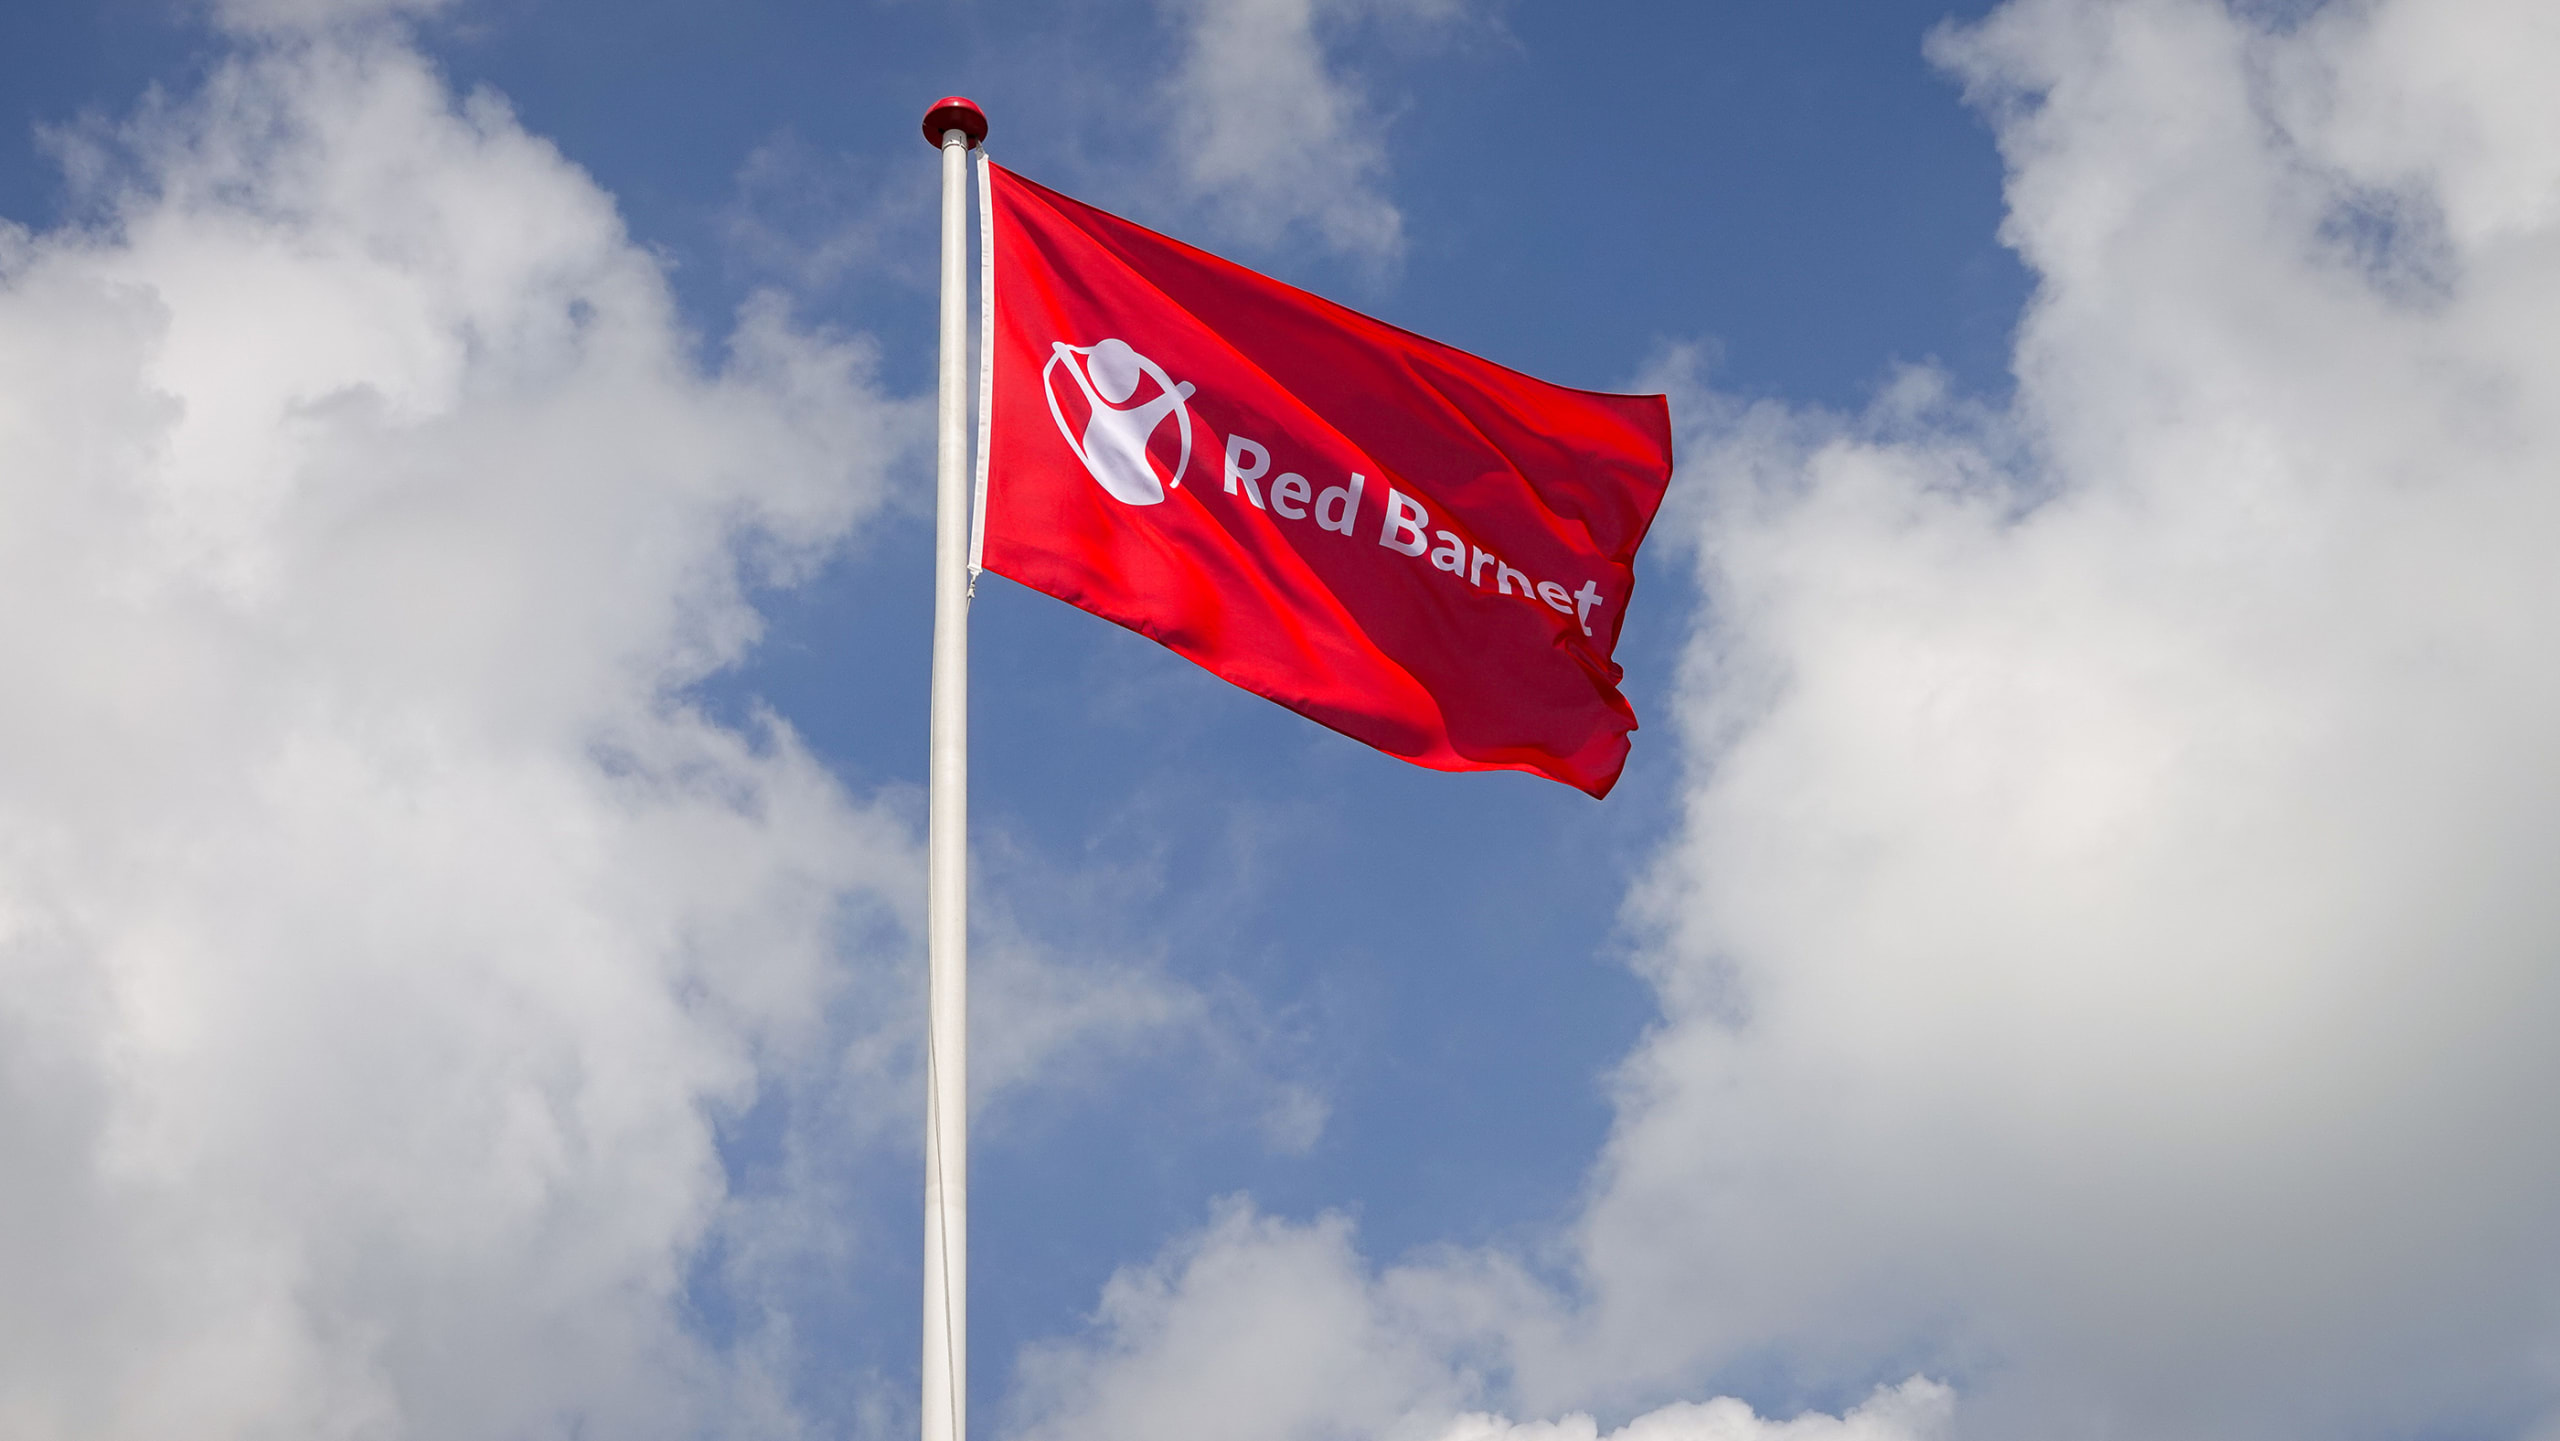 Red Barnet flag